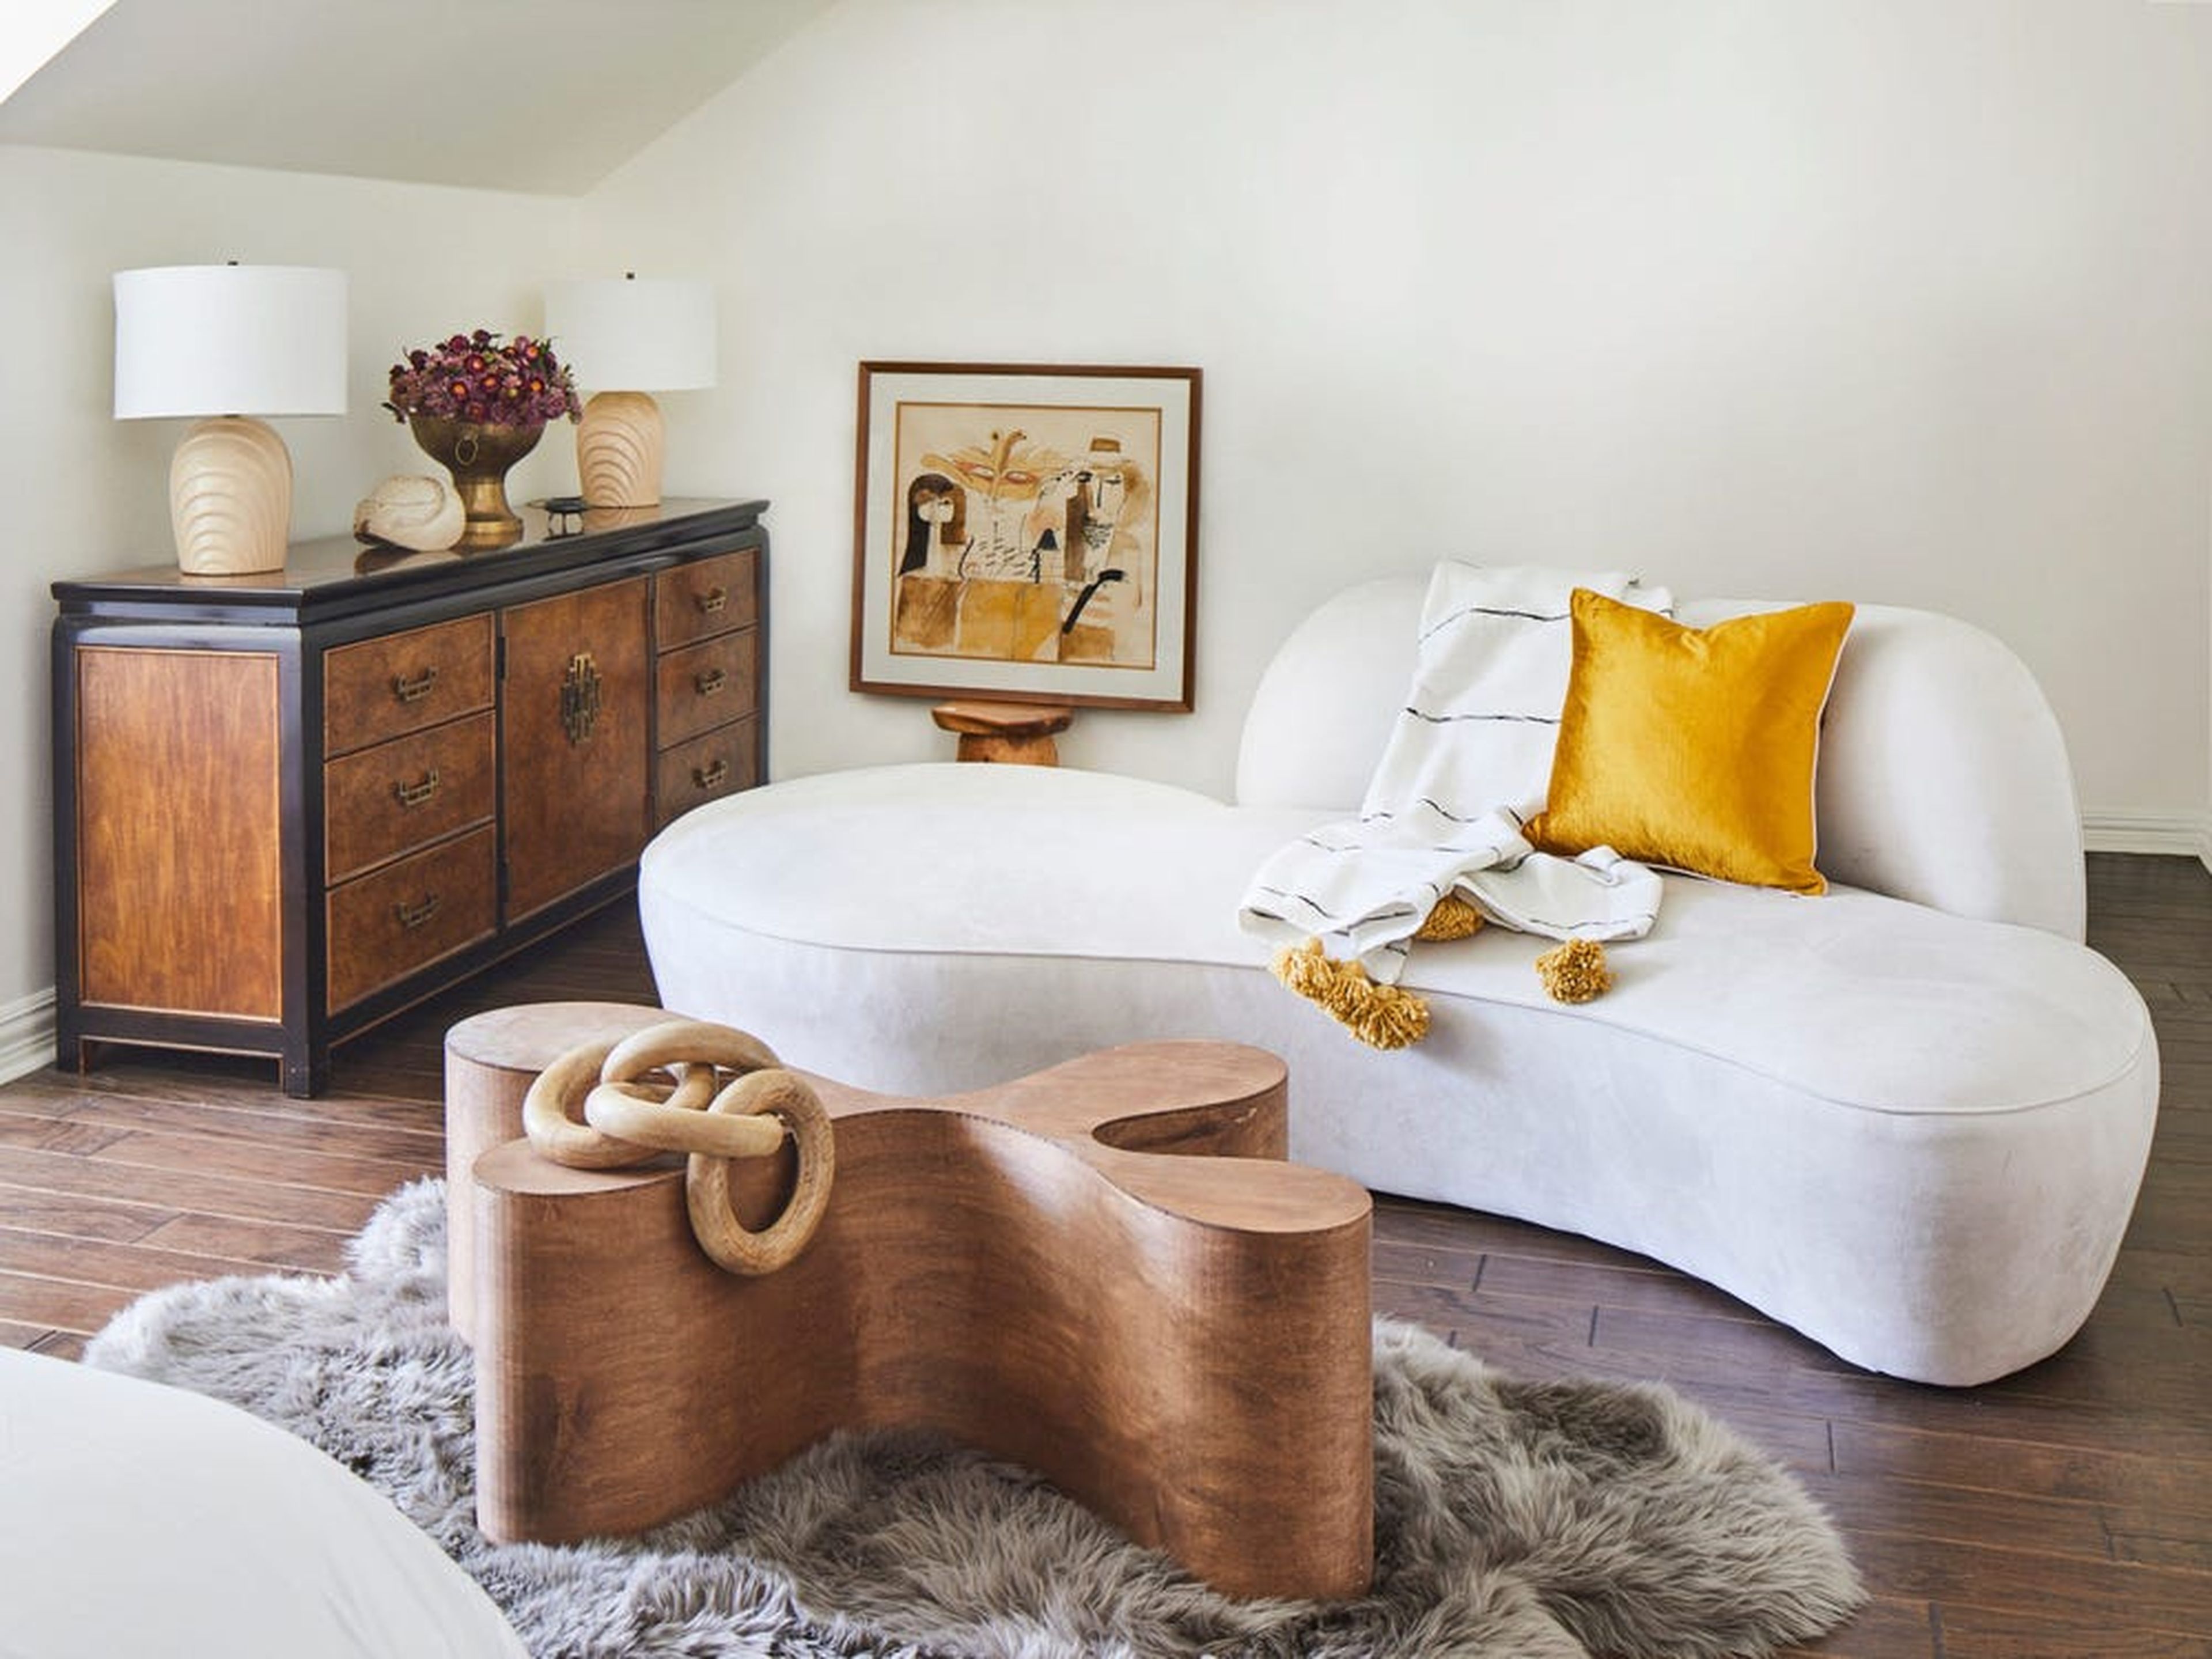 Los compradores están adoptando muebles de segunda mano como una forma de decorar sus hogares.